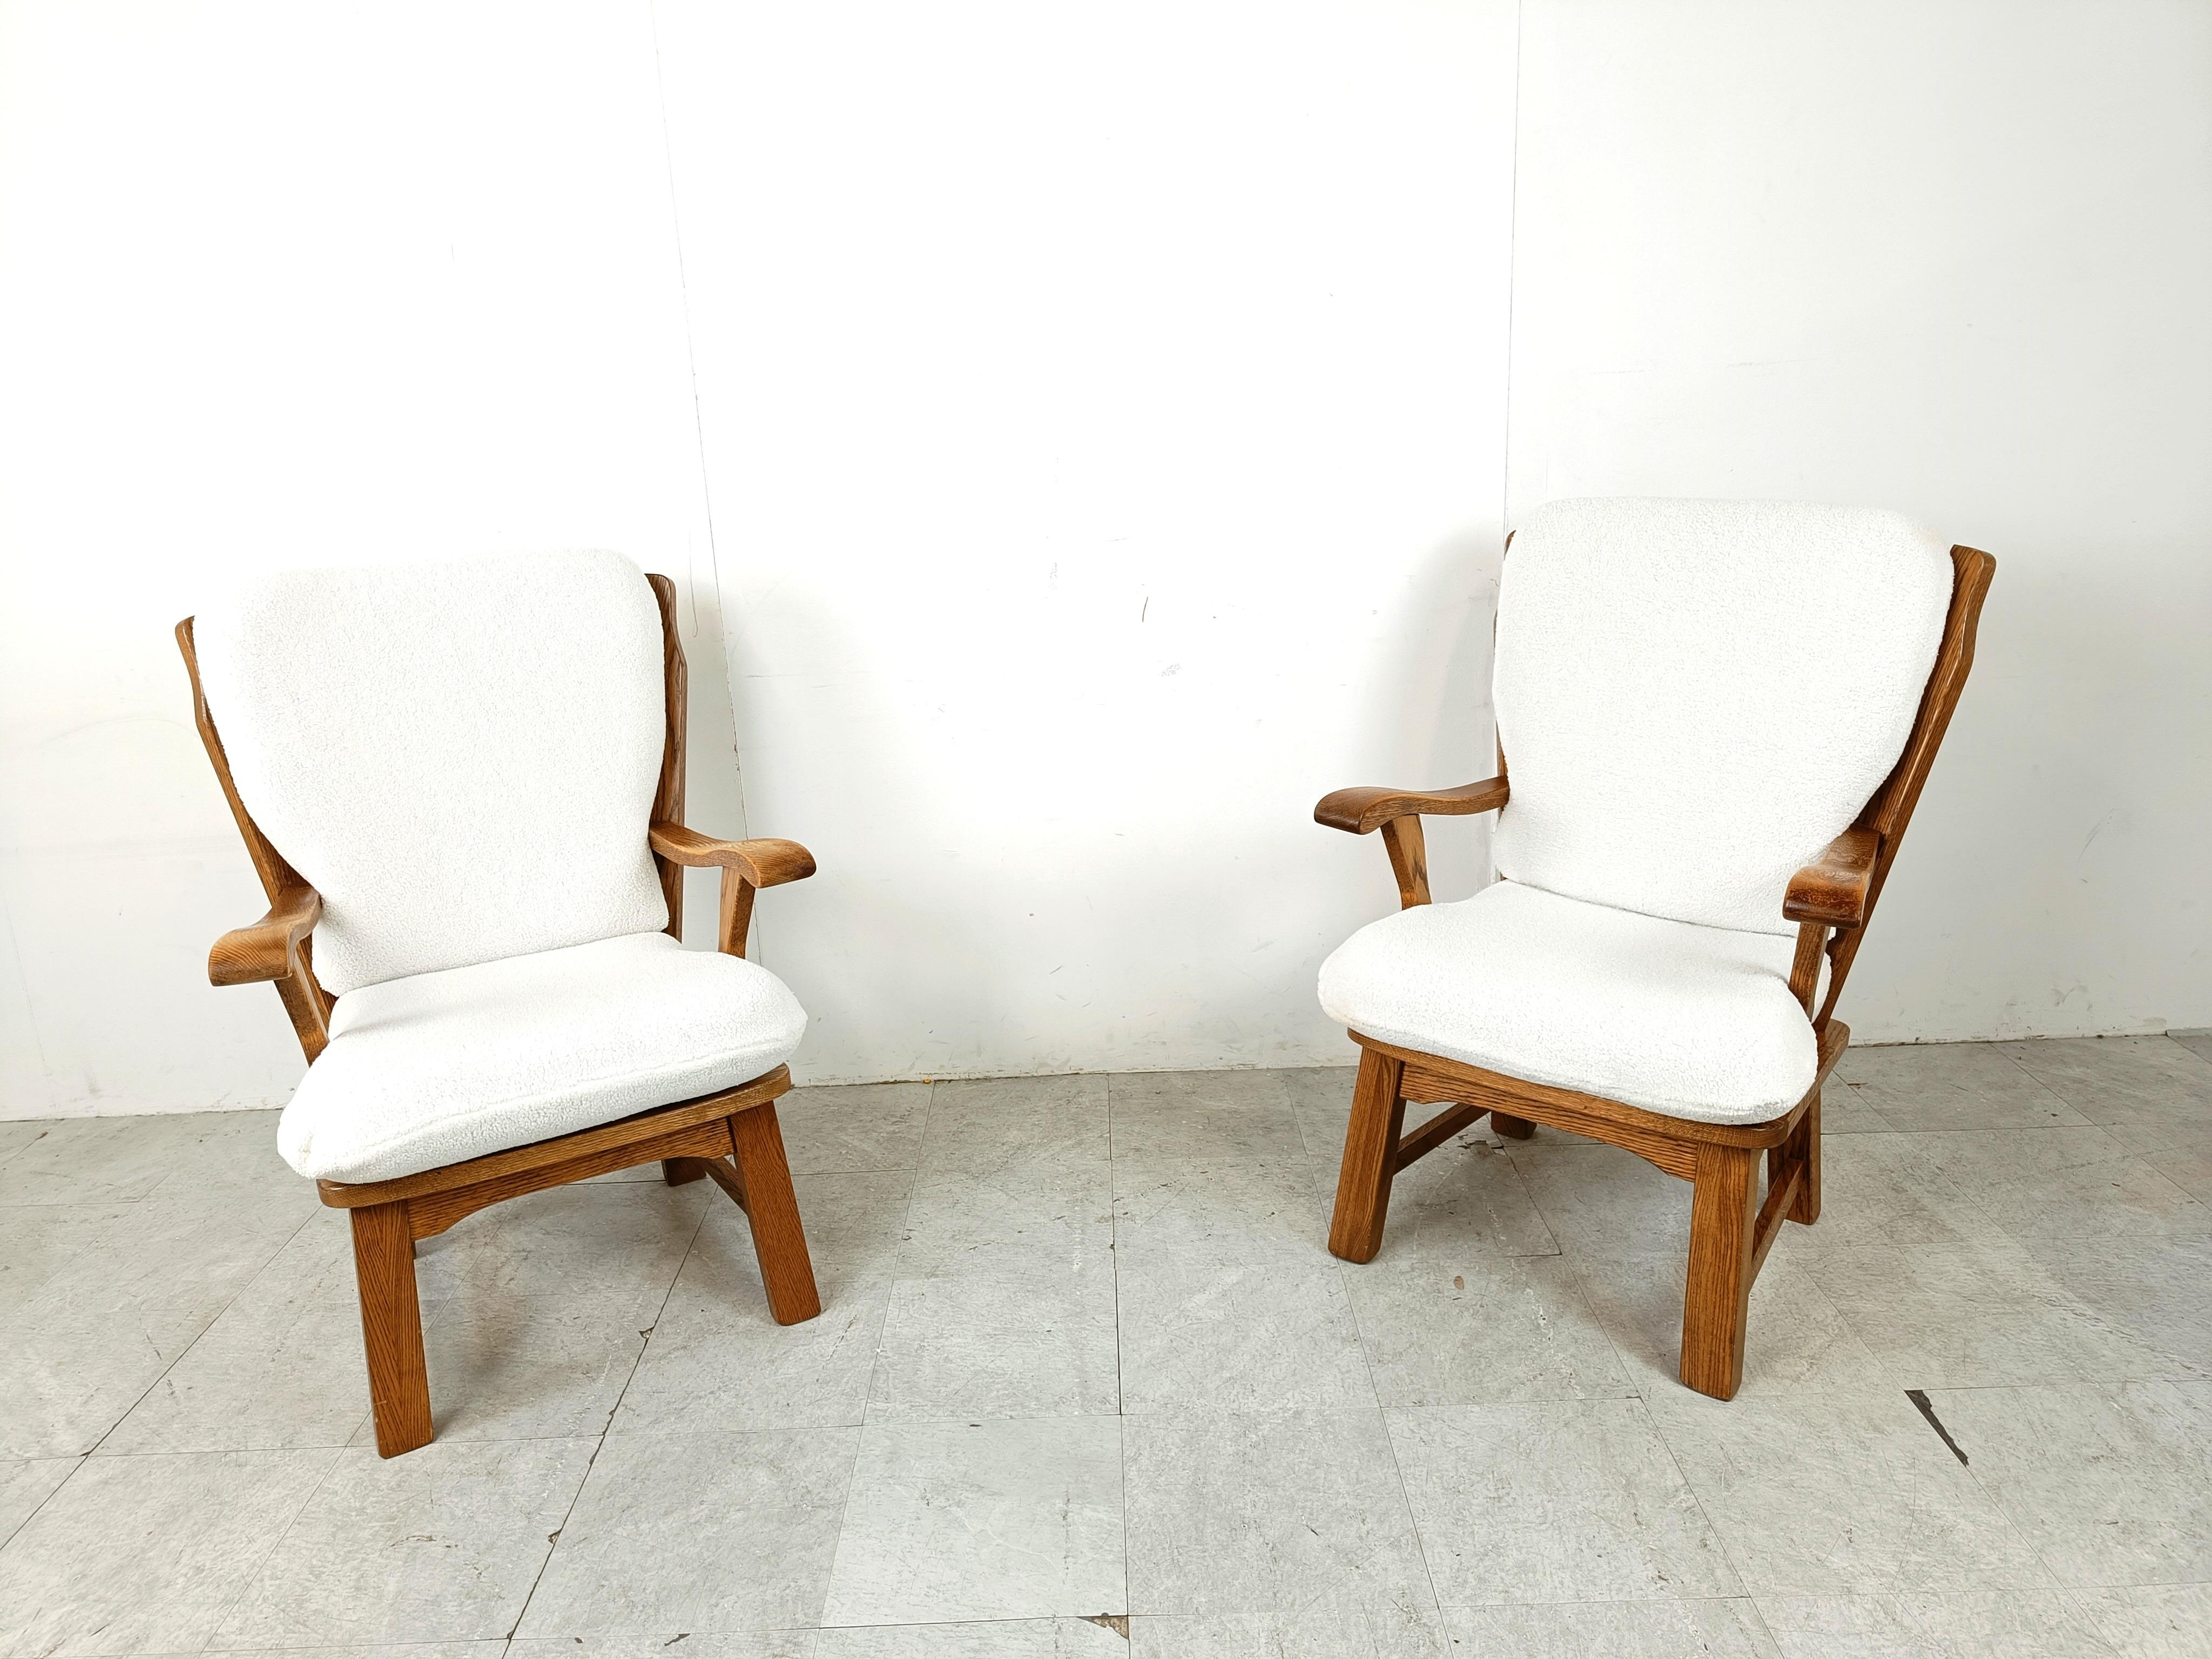 Paire de fauteuils rustiques en chêne massif avec des coussins en boucla confortables et frais.

Ces chaises en bois aux formes élégantes apportent une touche rustique à votre intérieur.

Années 1950 - France

Très bon état.

Hauteur : 100cm
Largeur